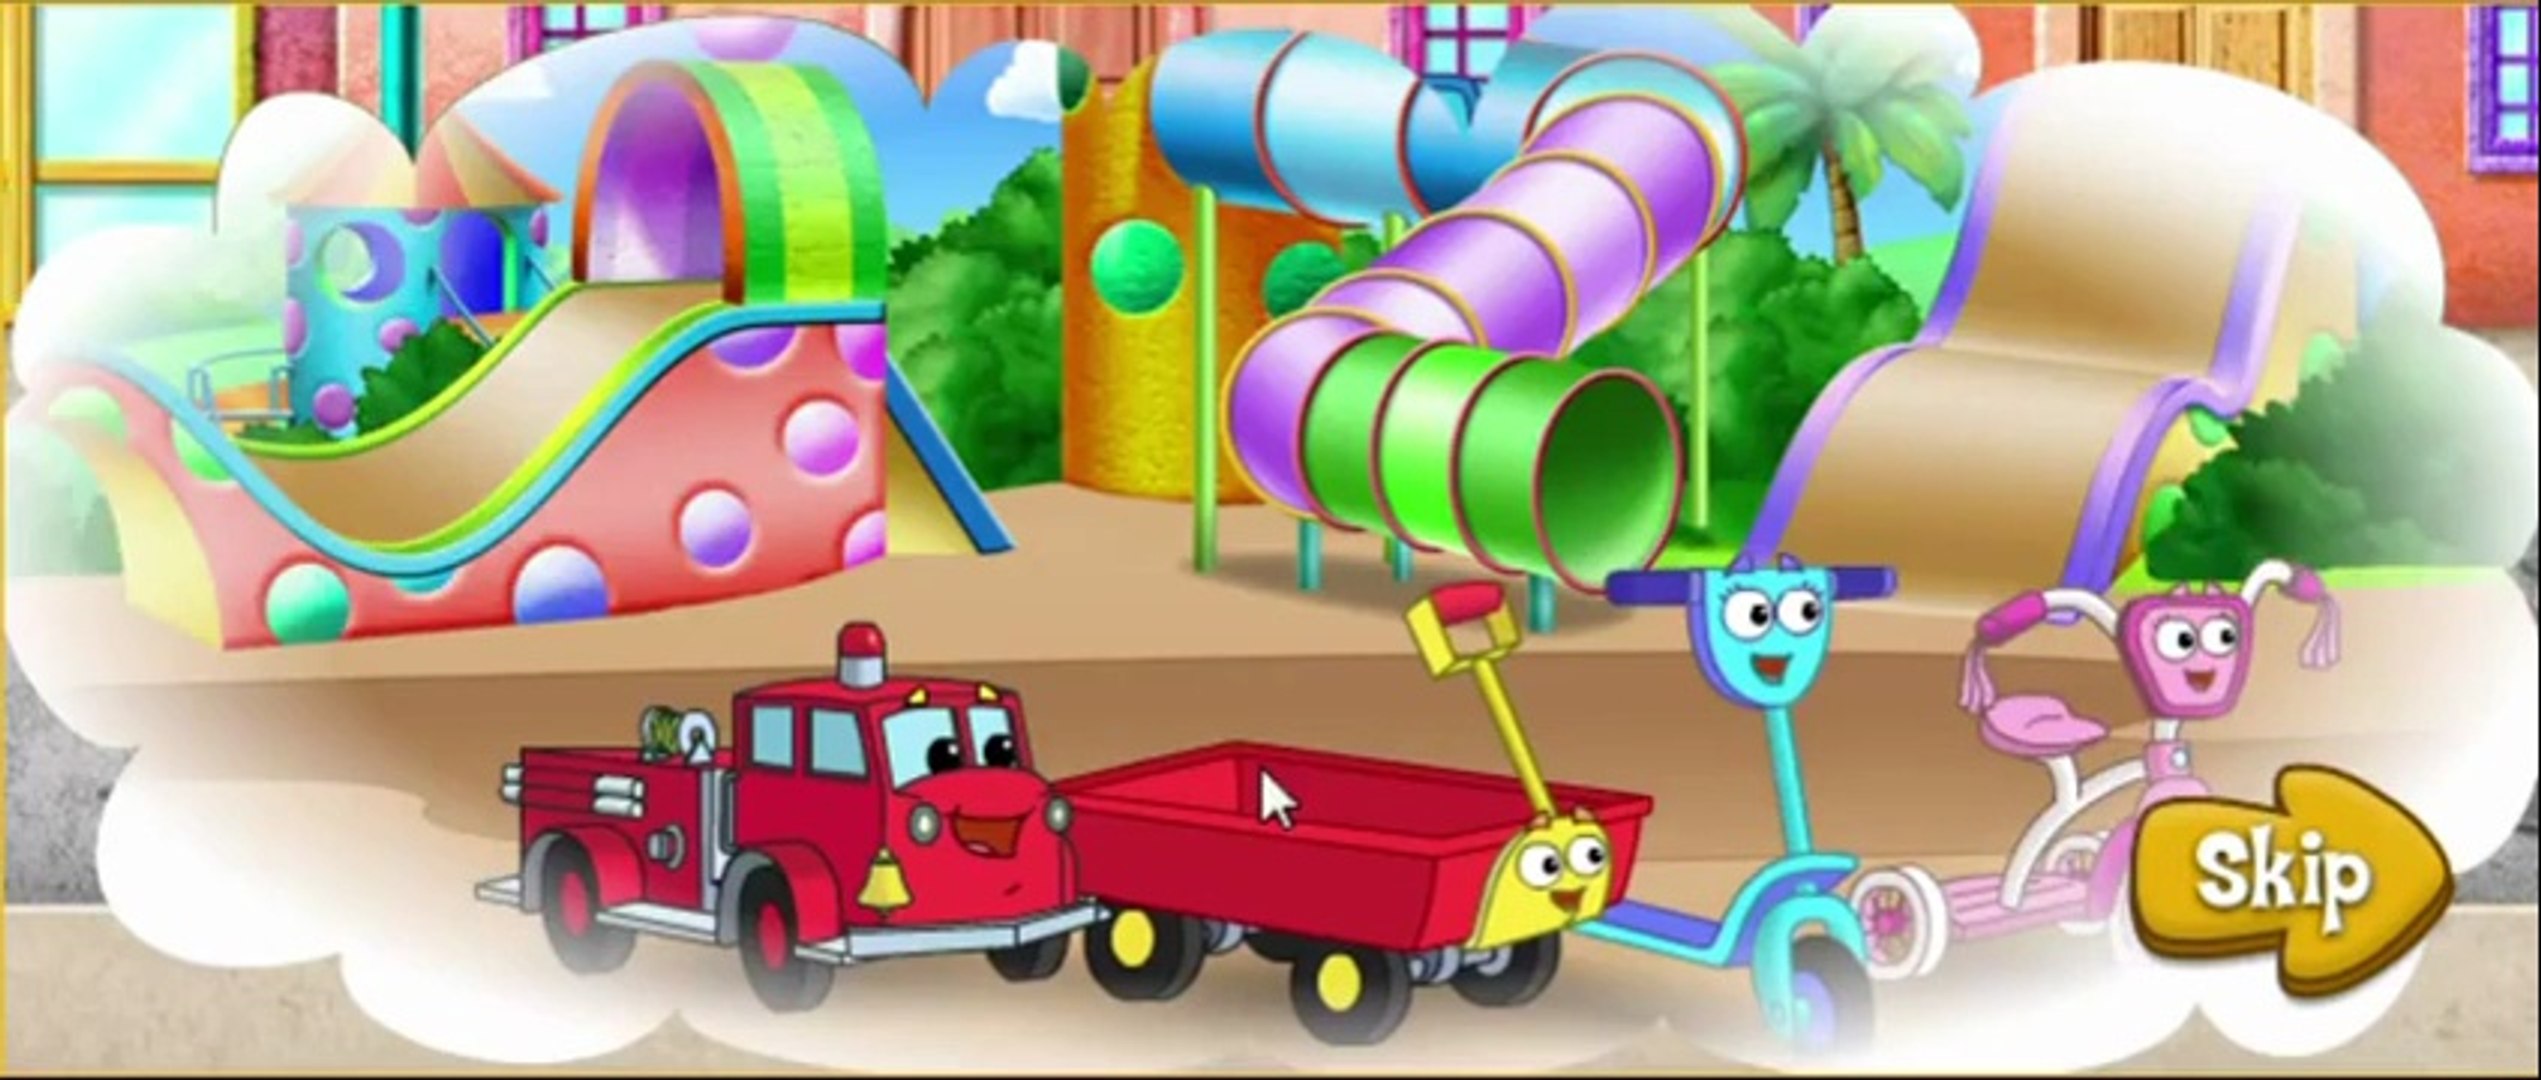 Dora the Explorer Full Episode - Dora's Great Roller Skate Adventure (2) -  video Dailymotion